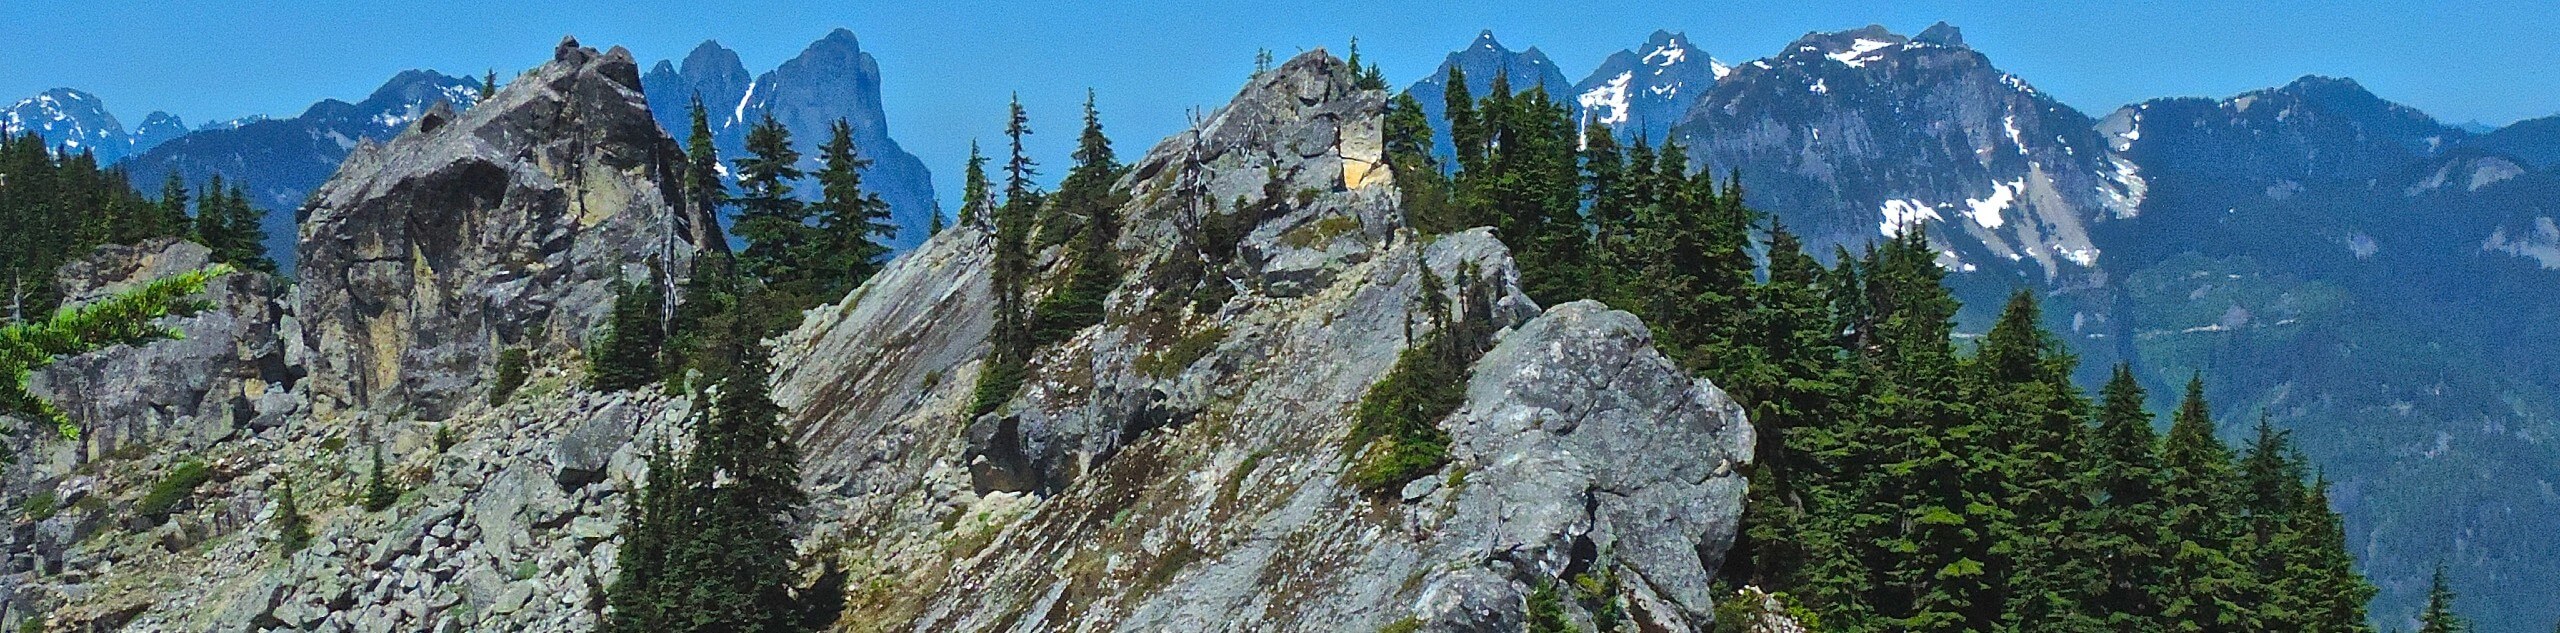 Beckler Peak Hike